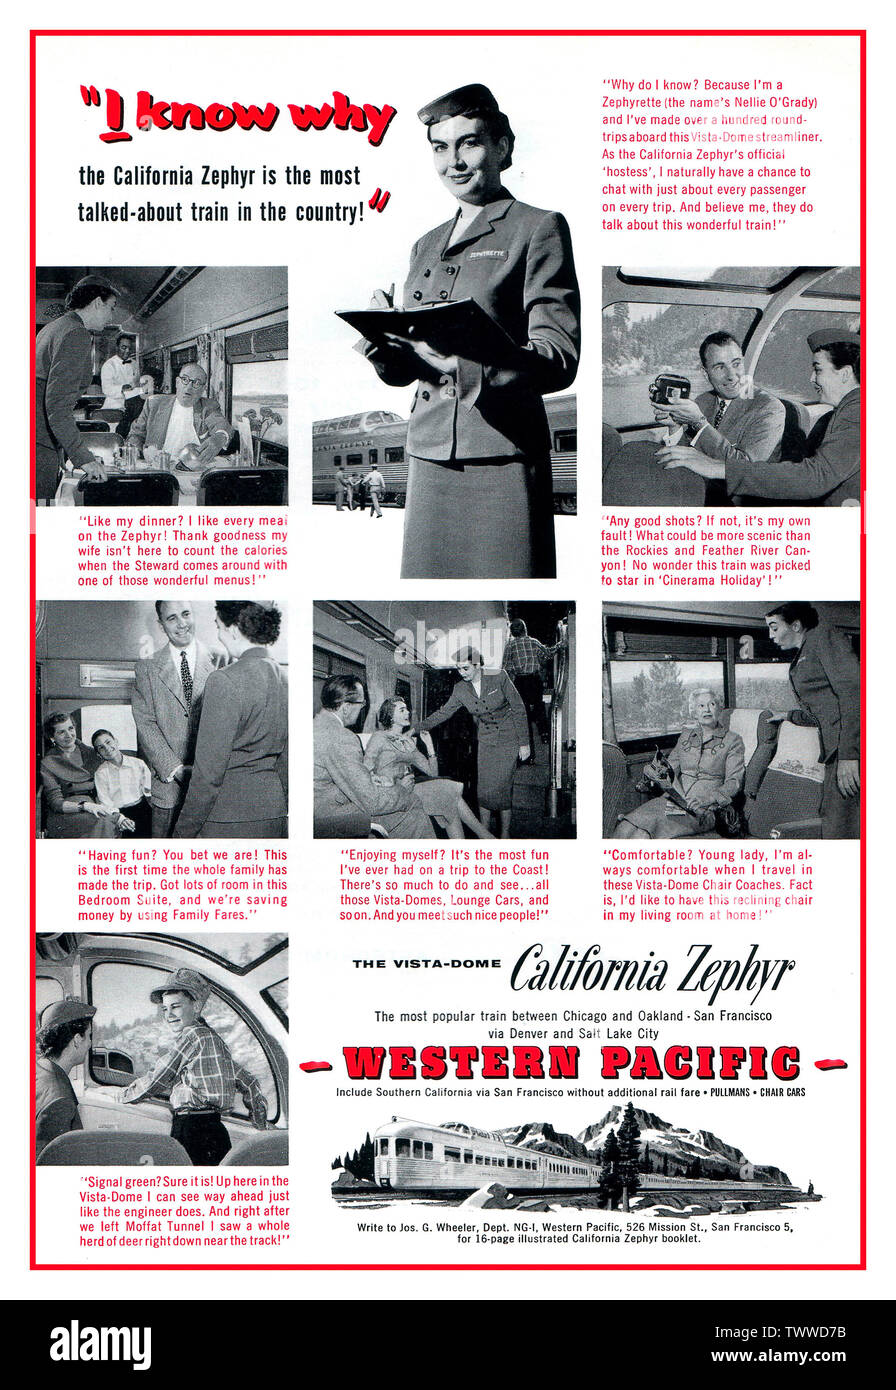 California ZEPHYR 1950's Vintage American Rail 1956 pubblicità per la California Zephyr del Pacifico occidentale, con una hostess ferroviaria Zephyrette uniformata che interagisce con una varietà di passeggeri a bordo del treno. Febbraio 1956 Pubblicità Per La California Zephyr Western Pacific Railroad Del Pacifico Occidentale Foto Stock